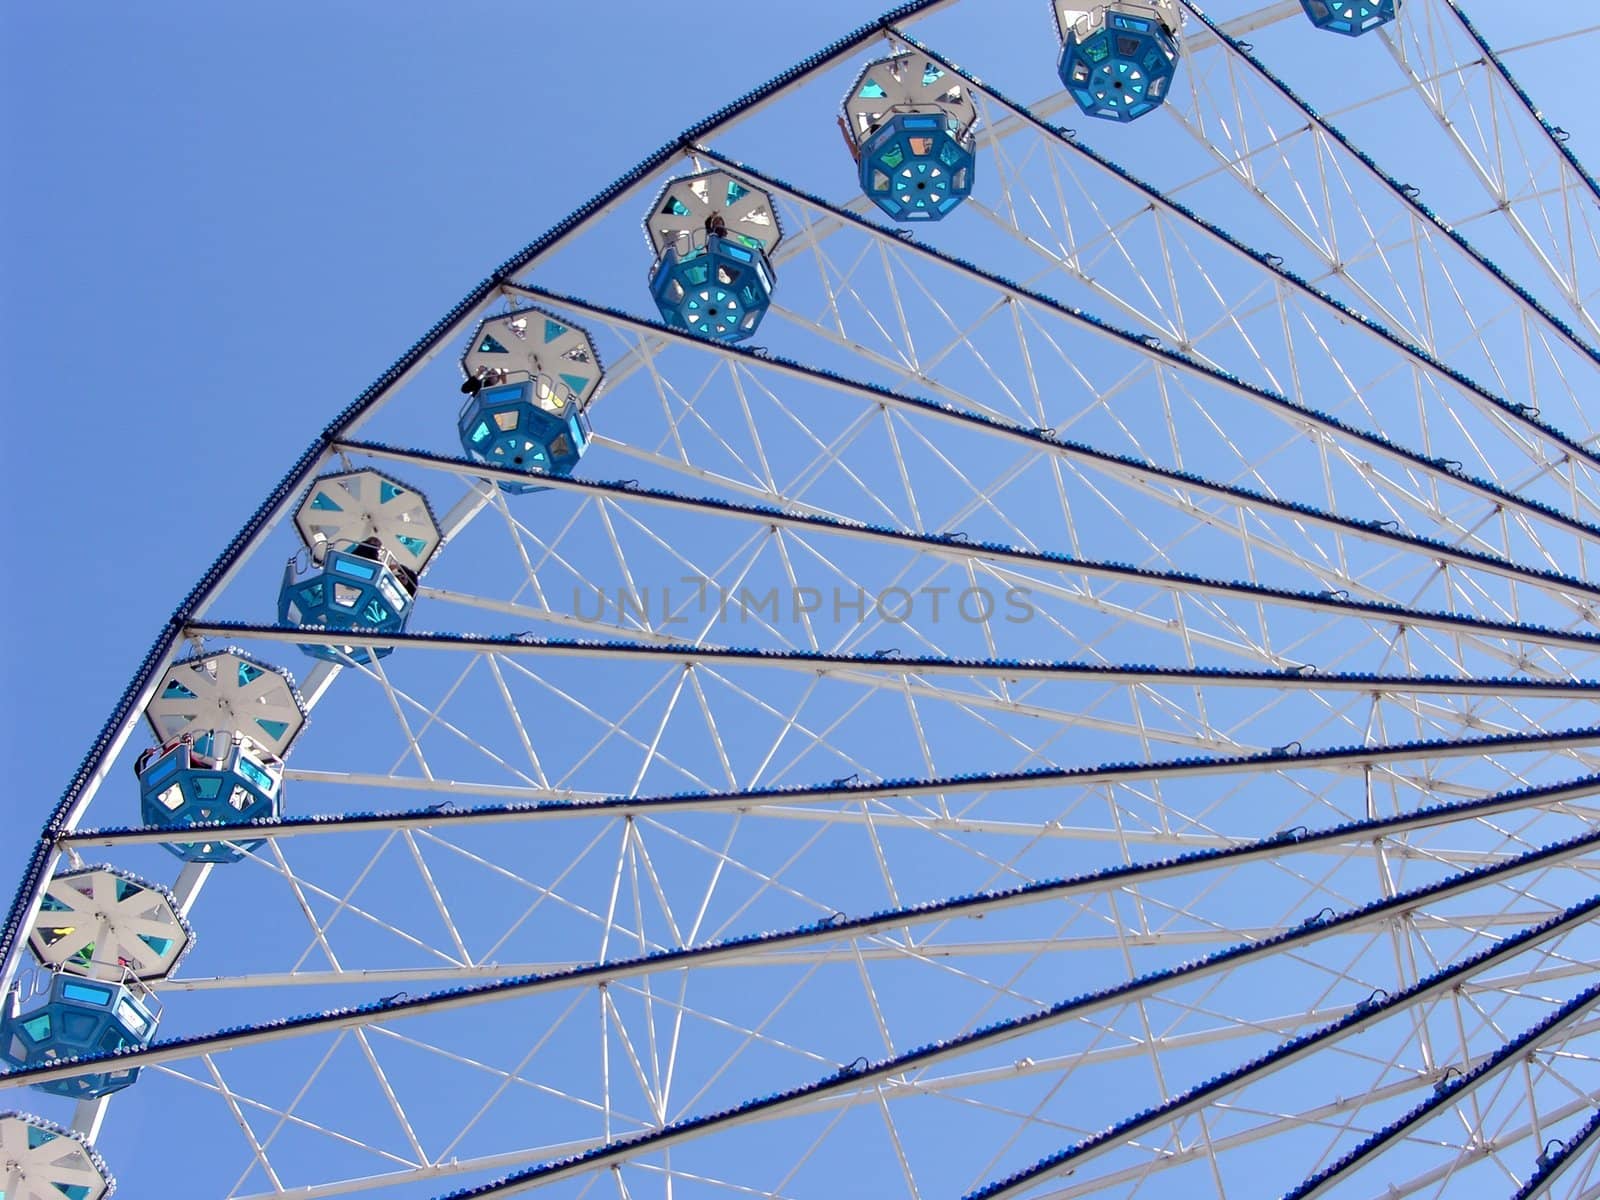 Ferris Wheel by peromarketing